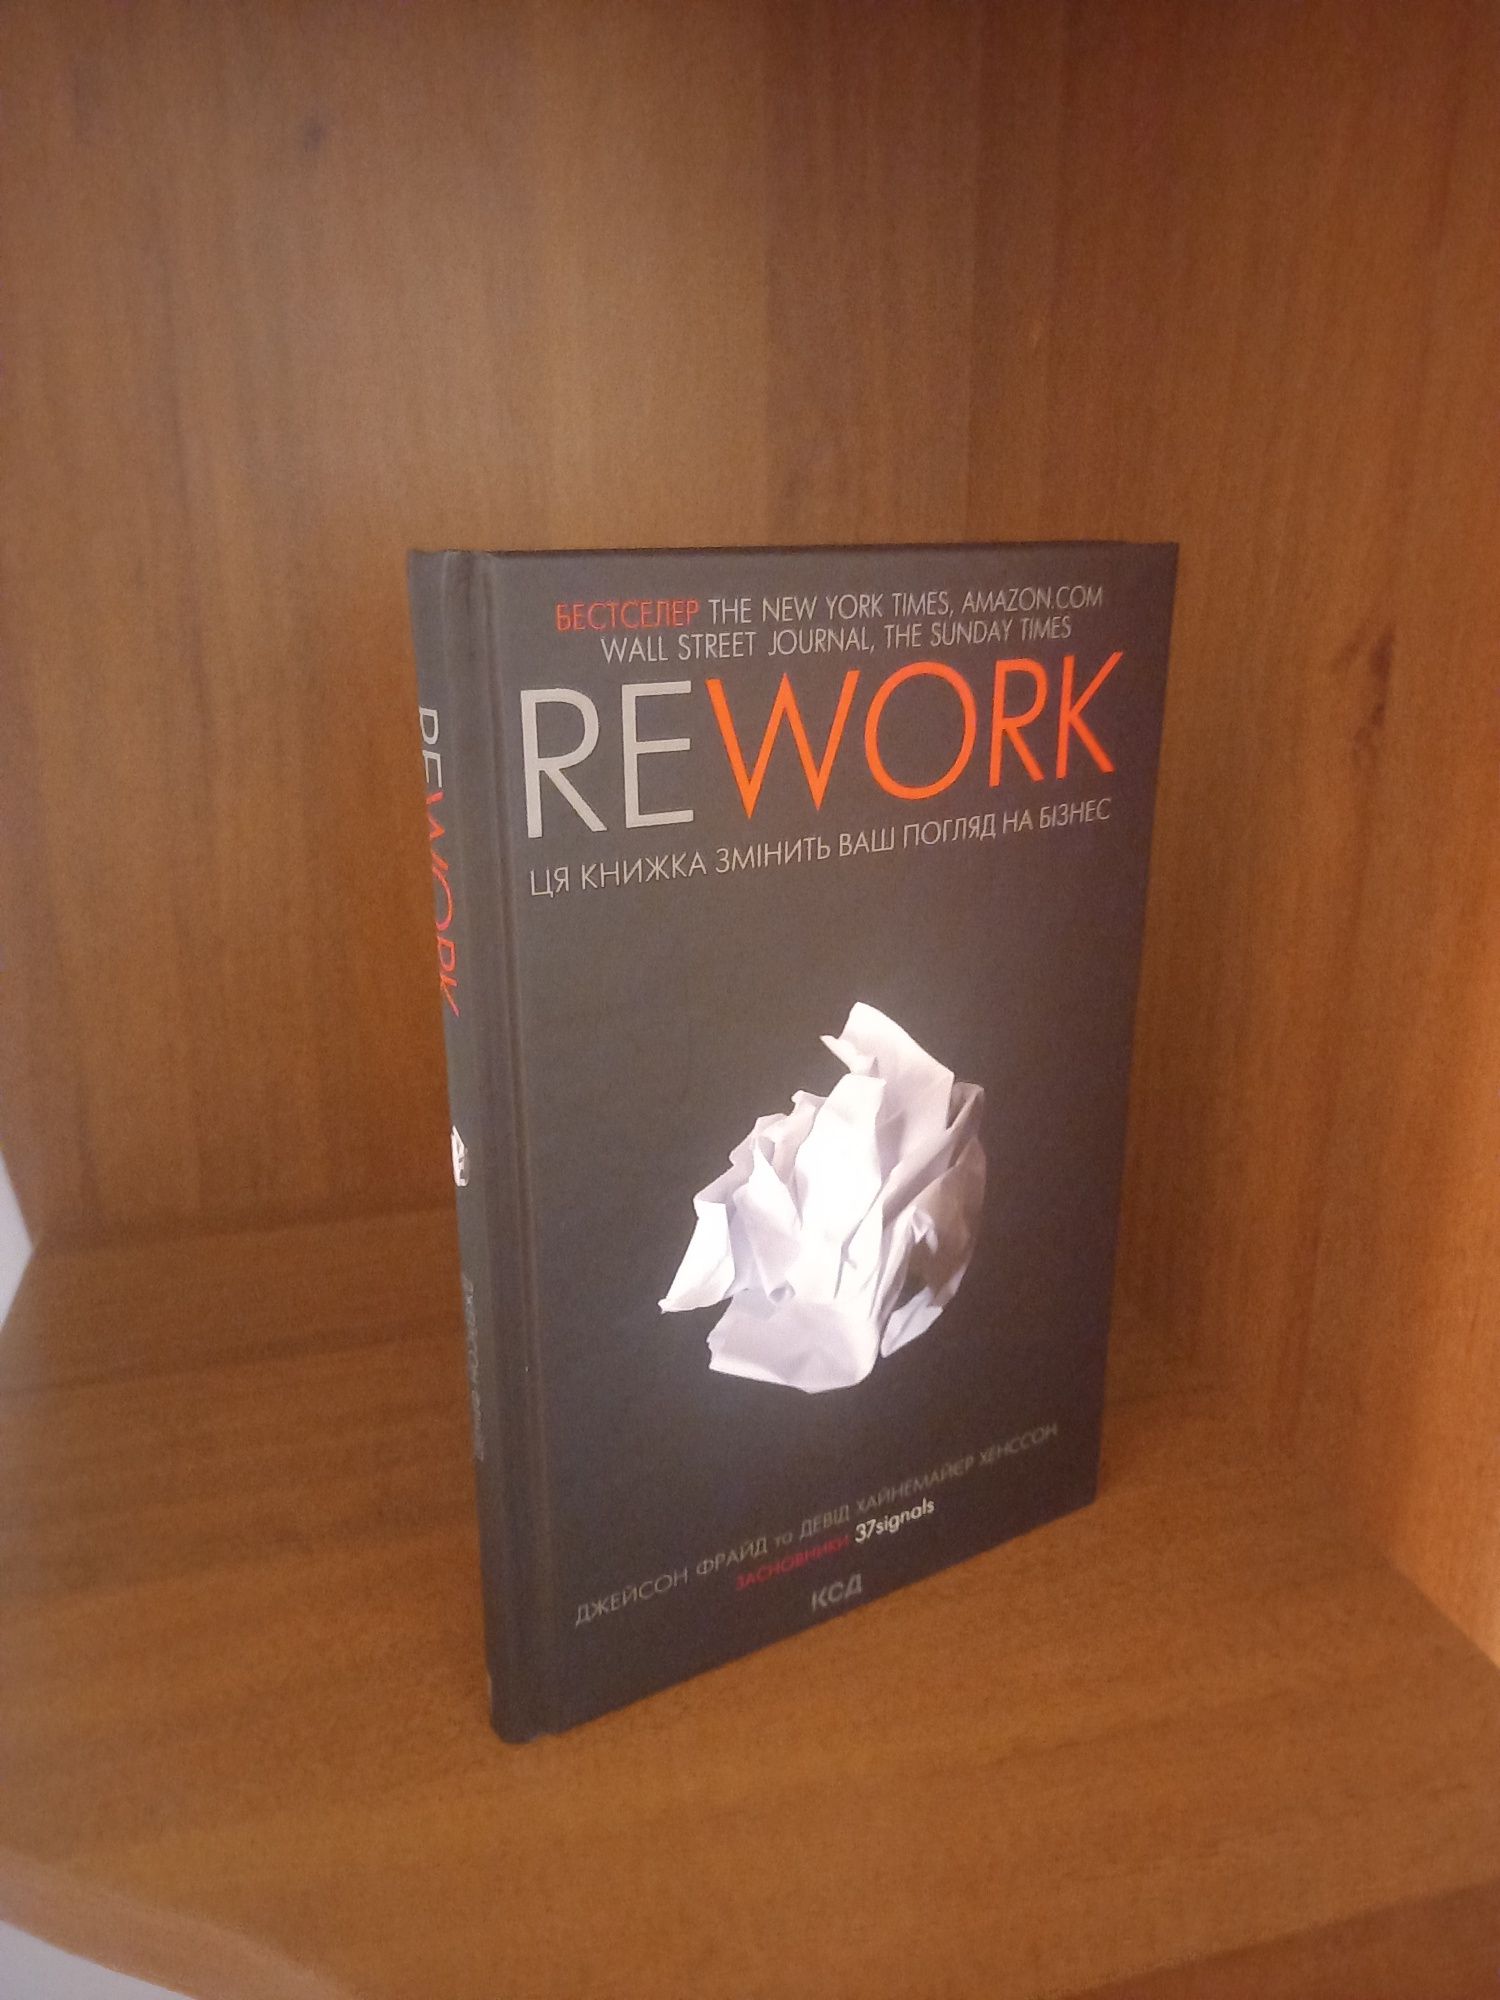 REWORK.Ця книжка змінить ваш погляд на бізнес.Джейсон Фрайд та Хенссон